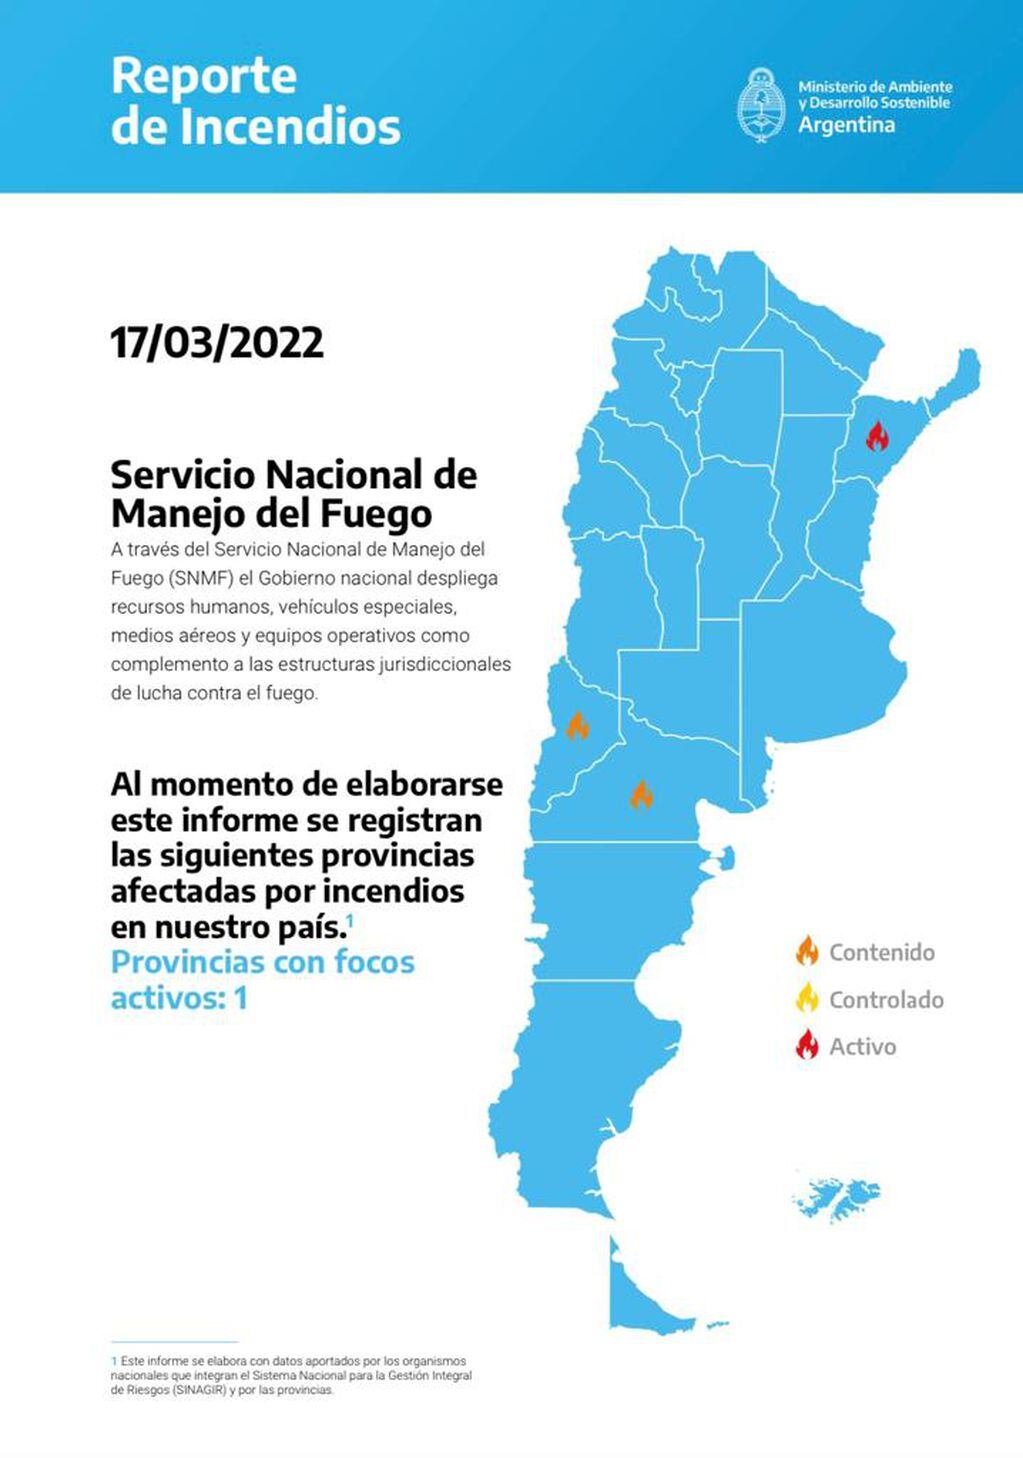 Según el informe del Ministerio de Ambiente y Desarrollo Sostenible, el único incendio activo del país se localiza en la provincia de Corrientes, en el departamento de Caá Catí.